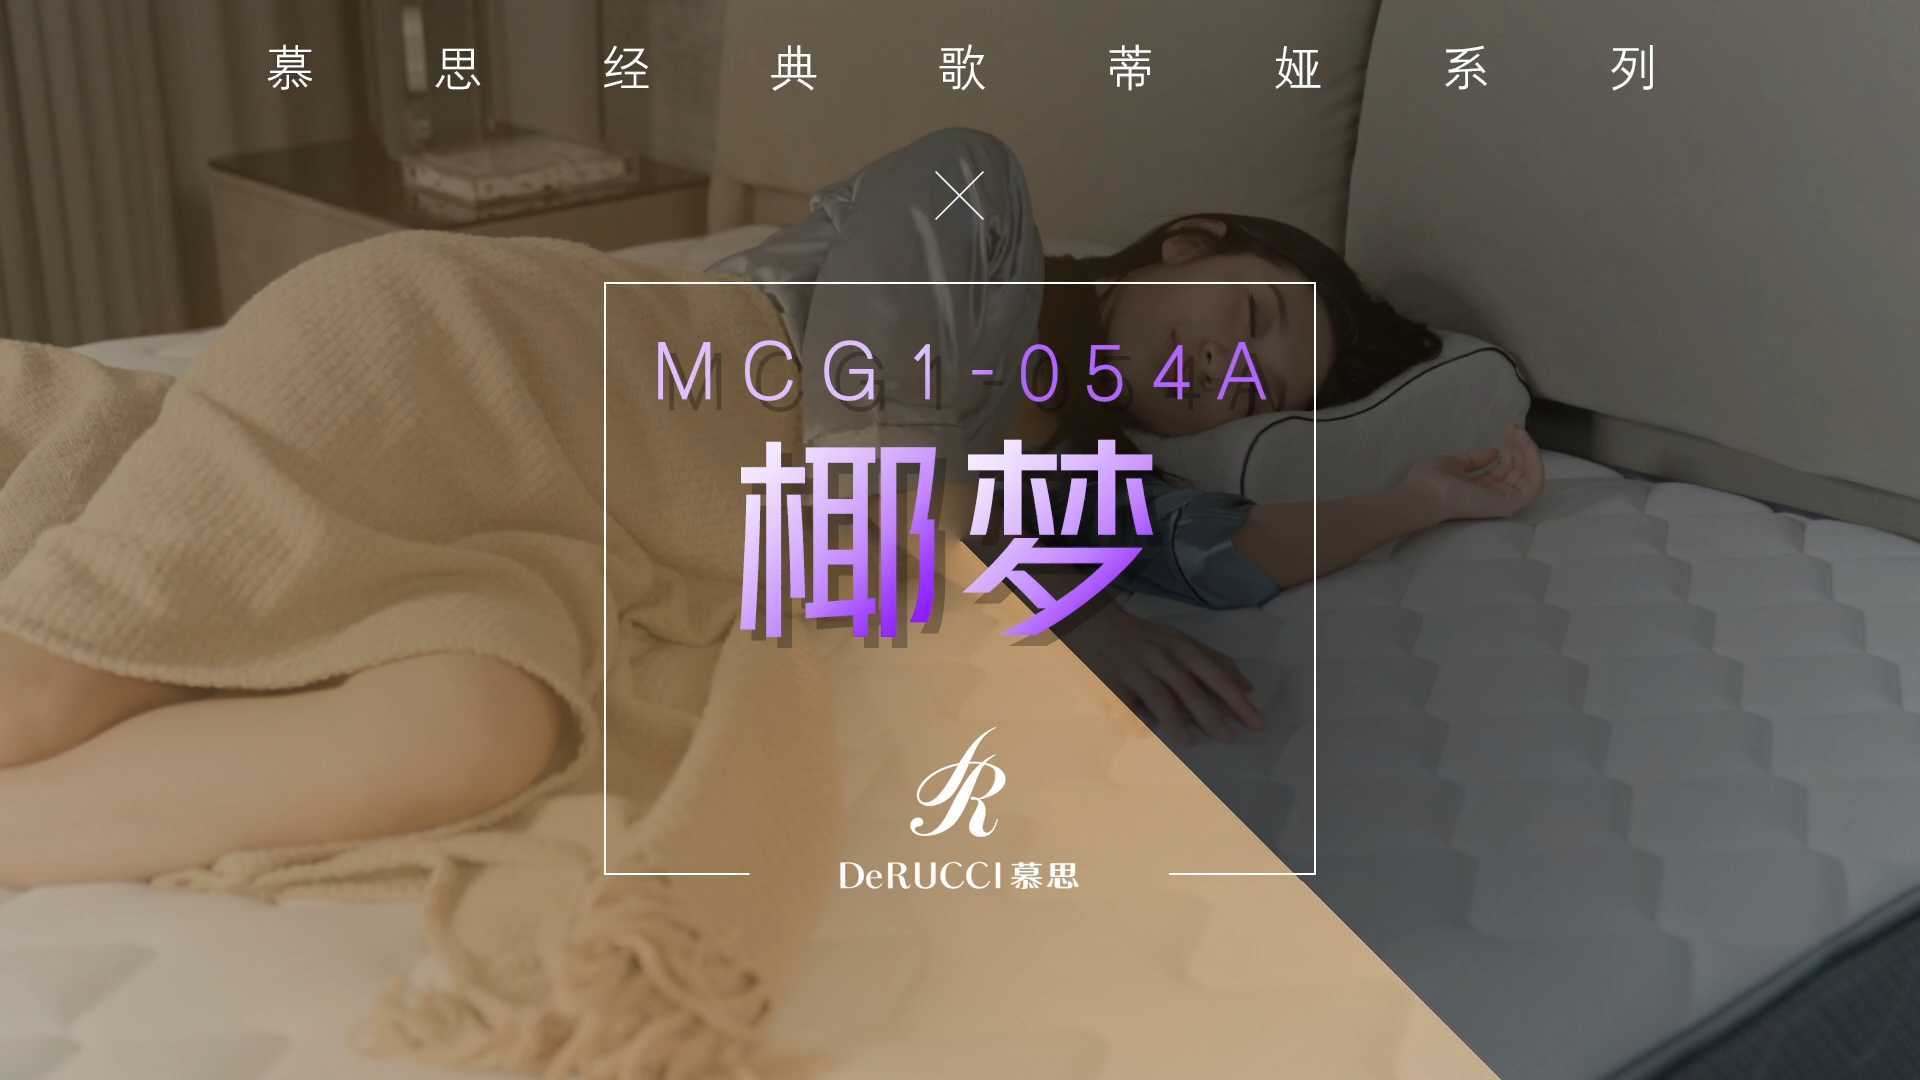 慕思歌蒂娅系列床垫—MCG1-054A—椰梦